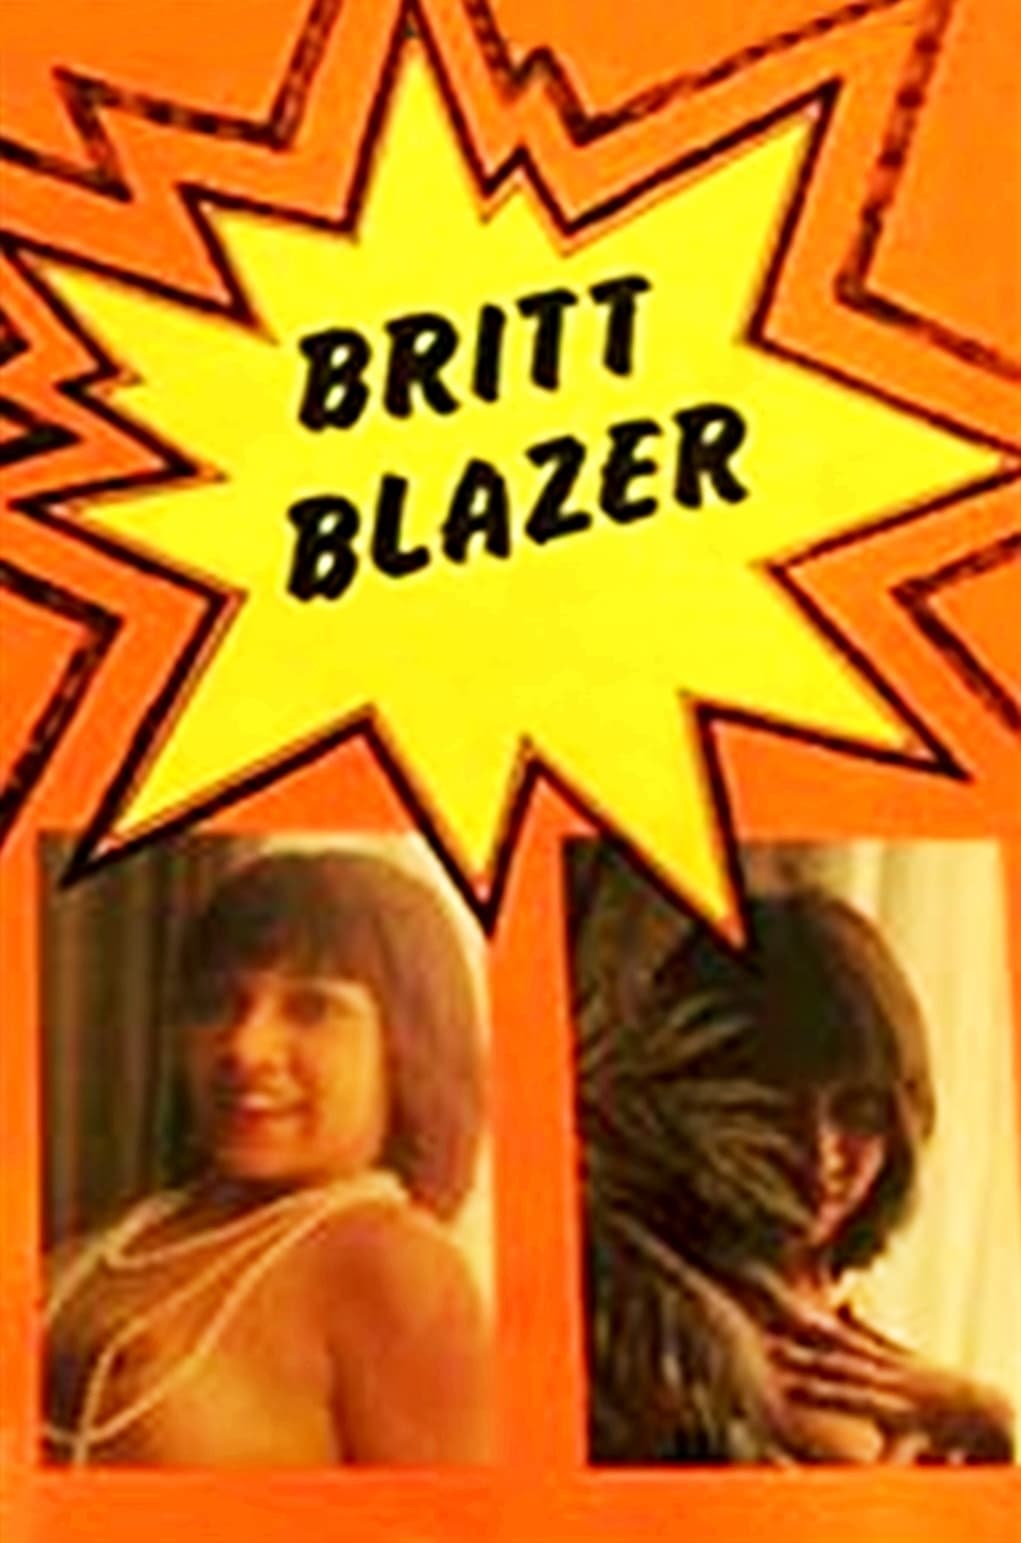 Britt Blazer (1970)